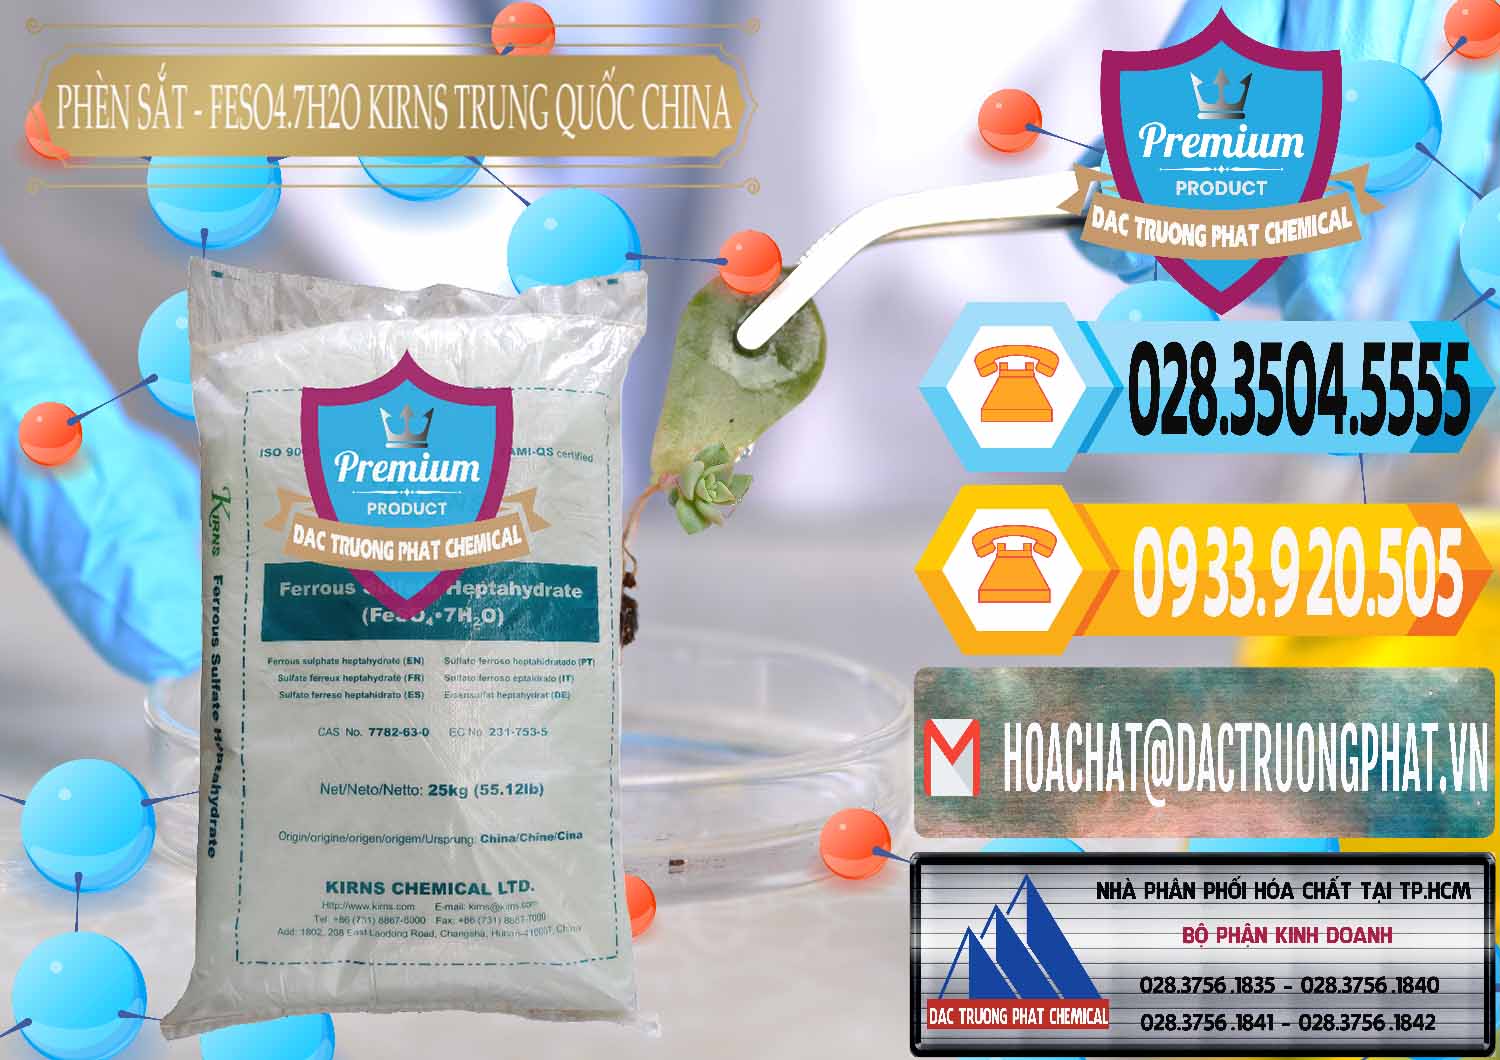 Đơn vị phân phối & bán Phèn Sắt - FeSO4.7H2O 98% Kirns Trung Quốc China - 0117 - Cty chuyên kinh doanh và cung cấp hóa chất tại TP.HCM - hoachattayrua.net